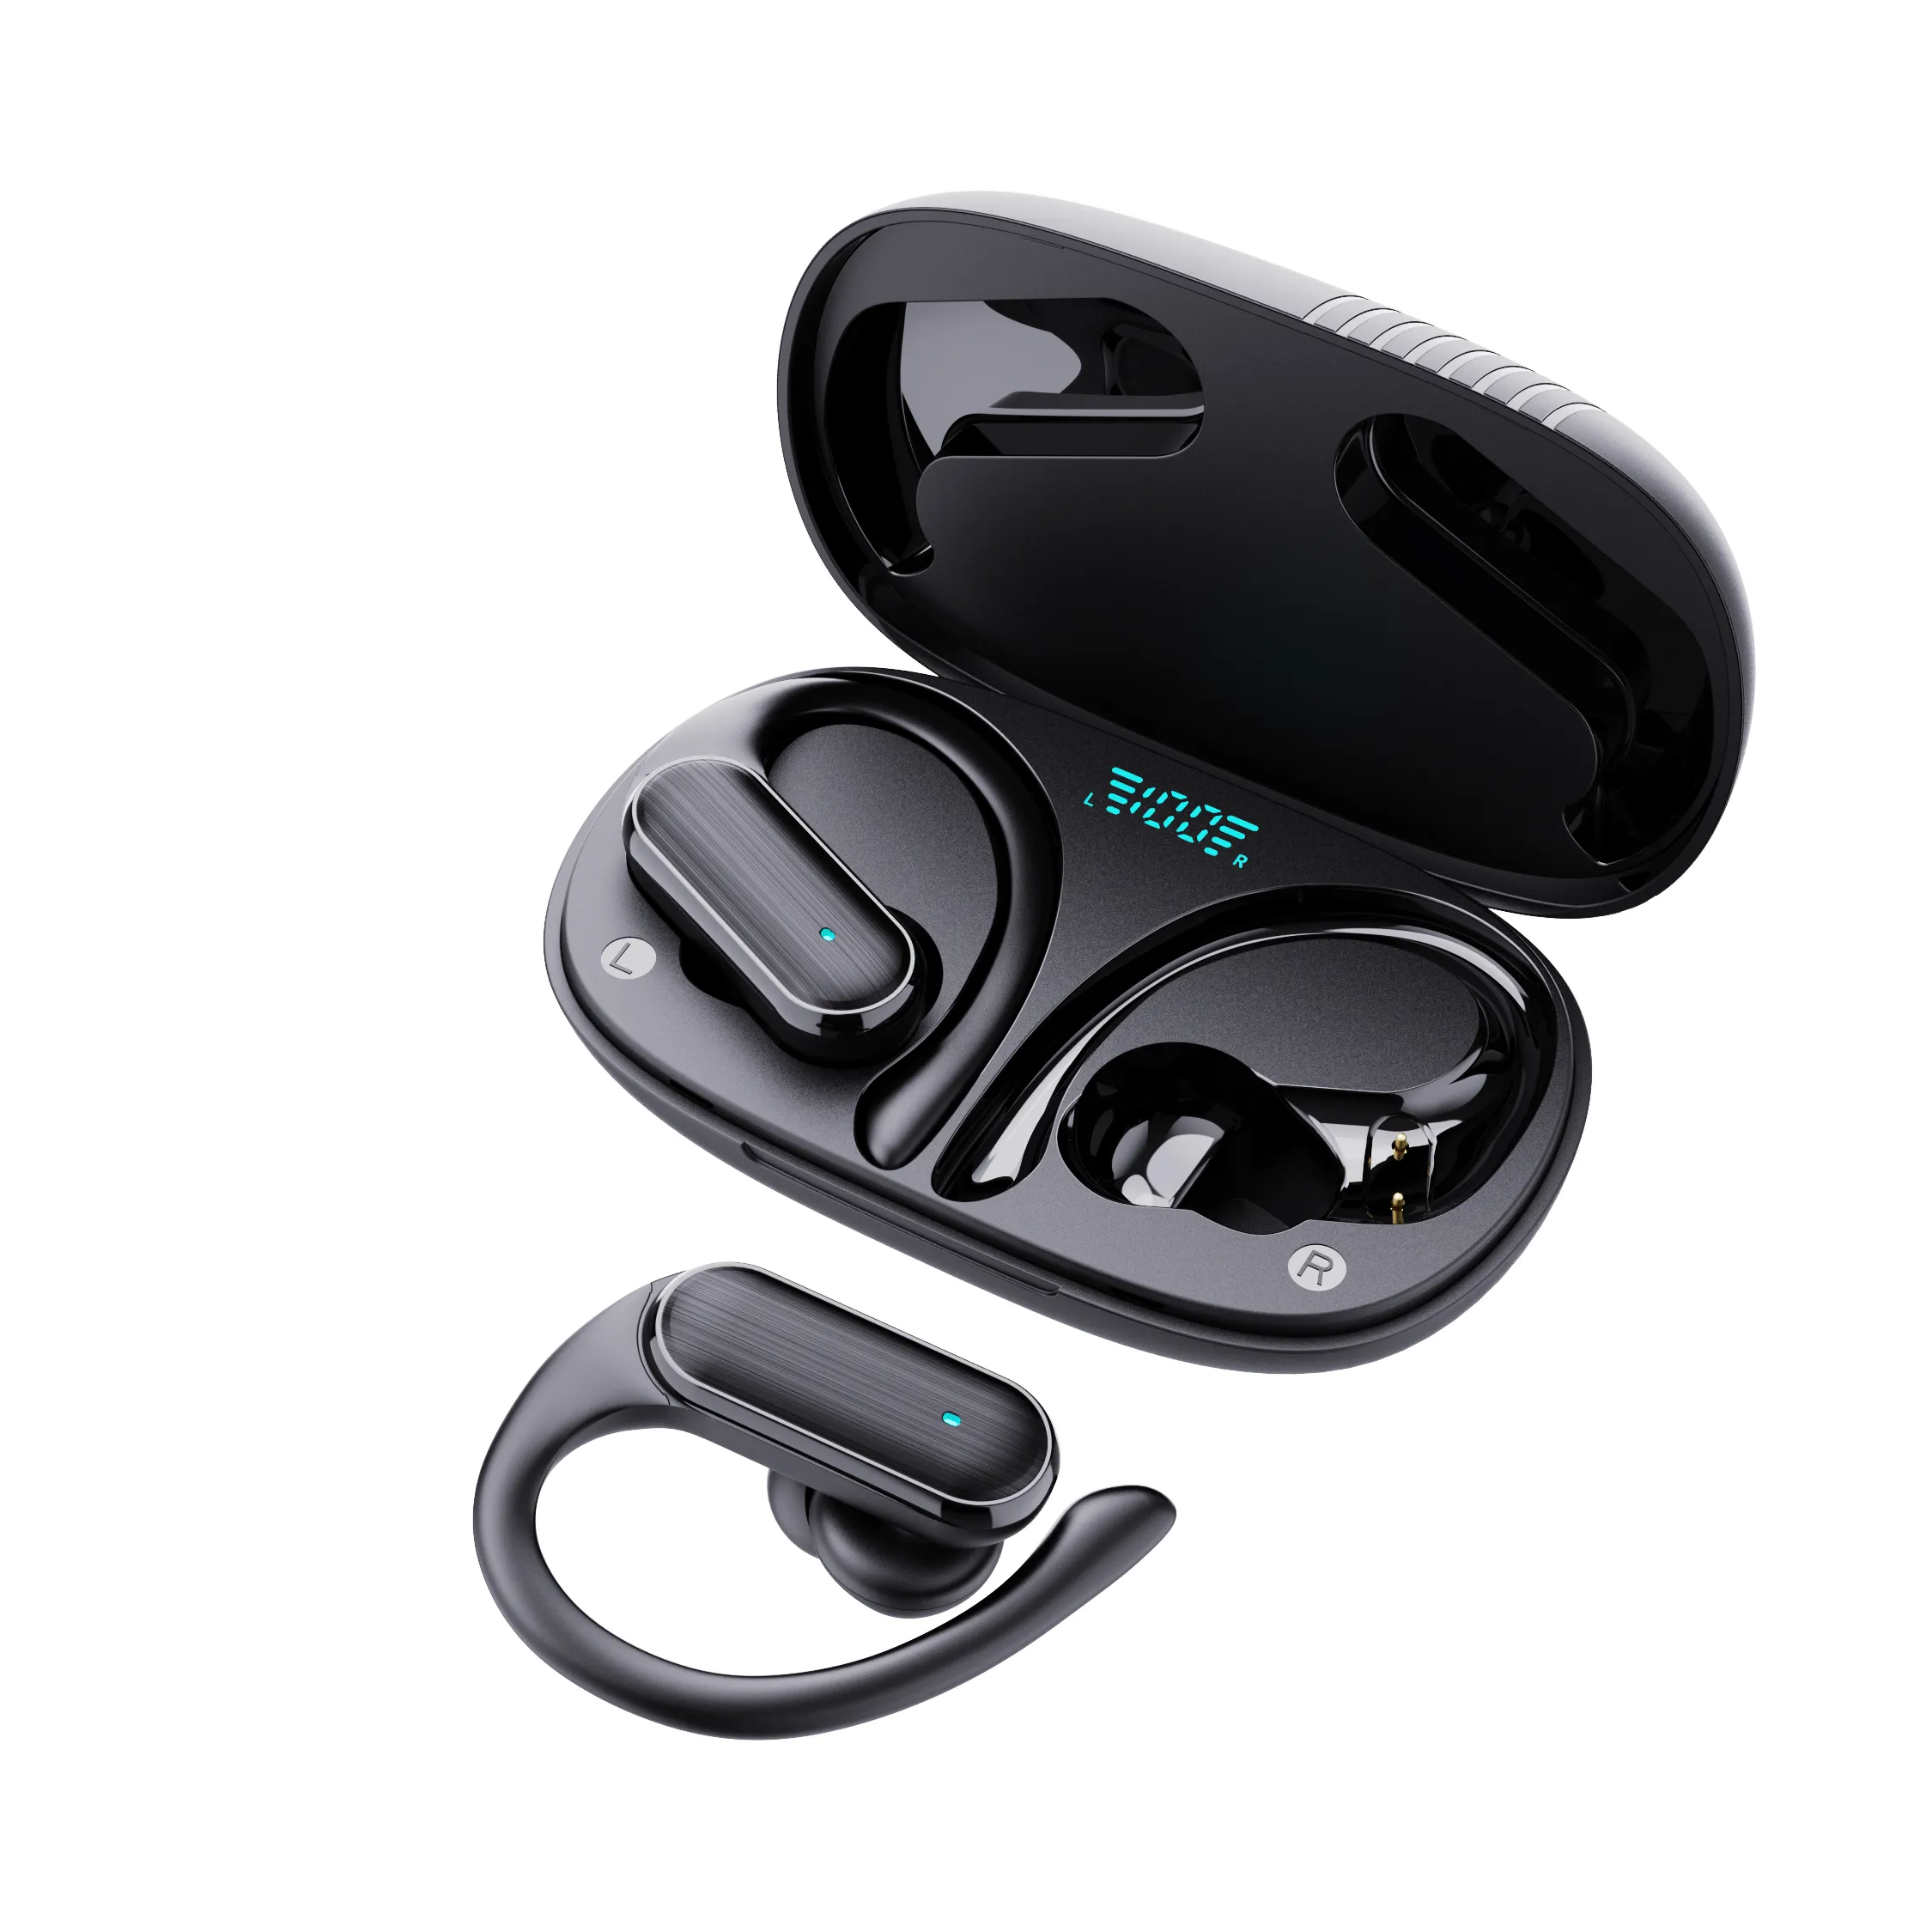 새로운 모델 초박형 휴대용 라이트 포켓 디지털 디스플레이 스포츠 방수 무선 이어훅 이어버드 스테레오 이어폰